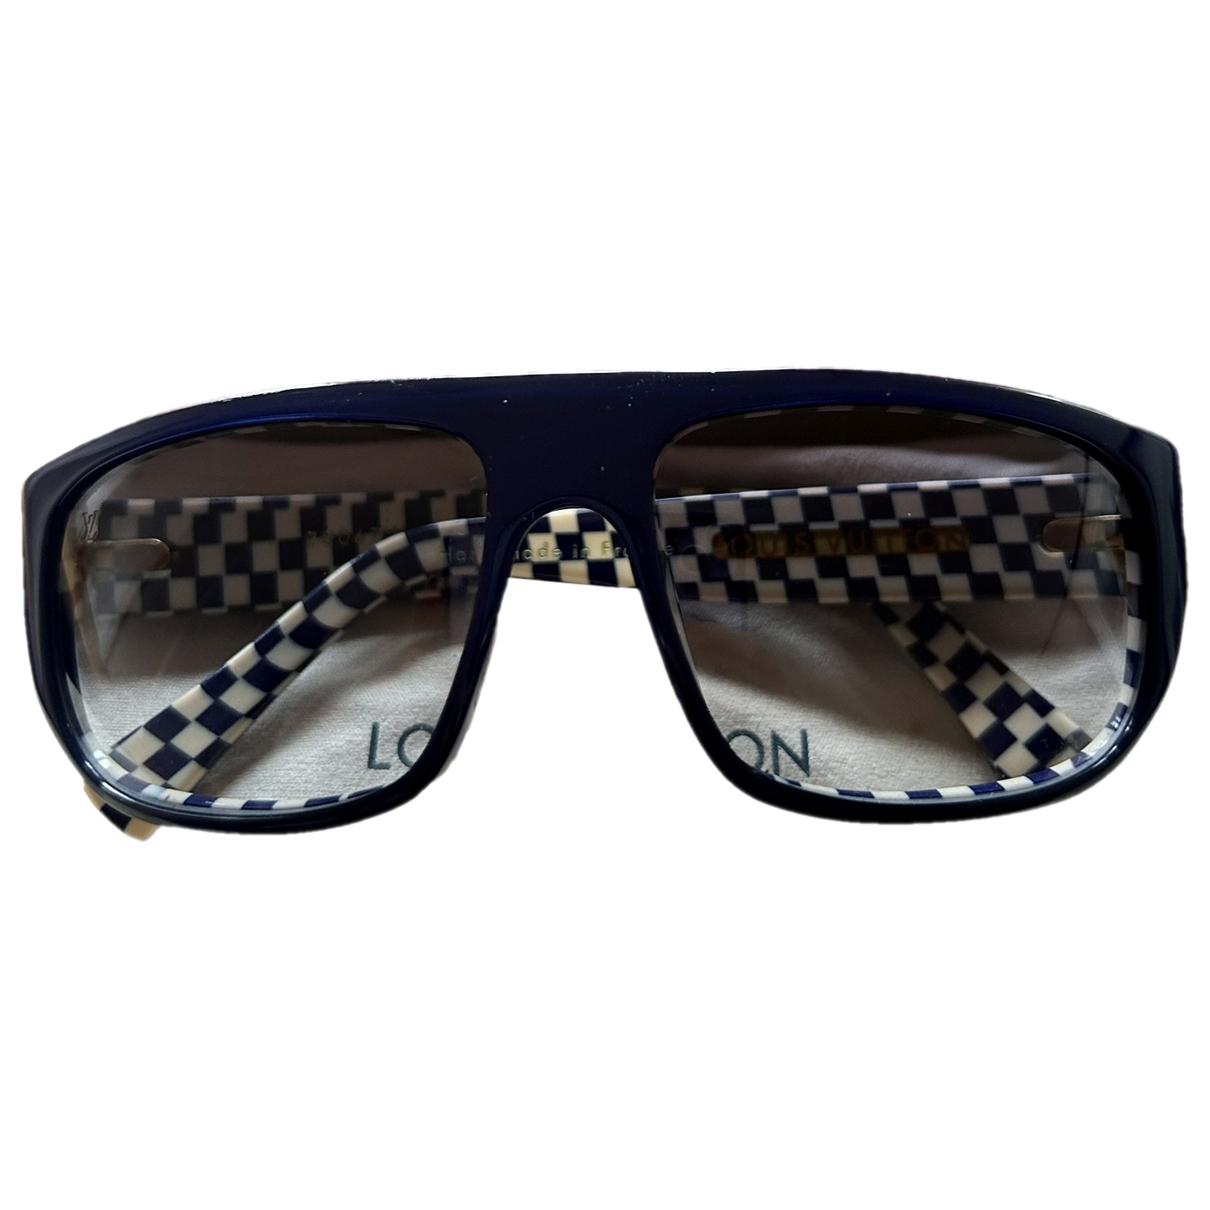 Sunglasses Louis Vuitton Black in Plastic - 30360708